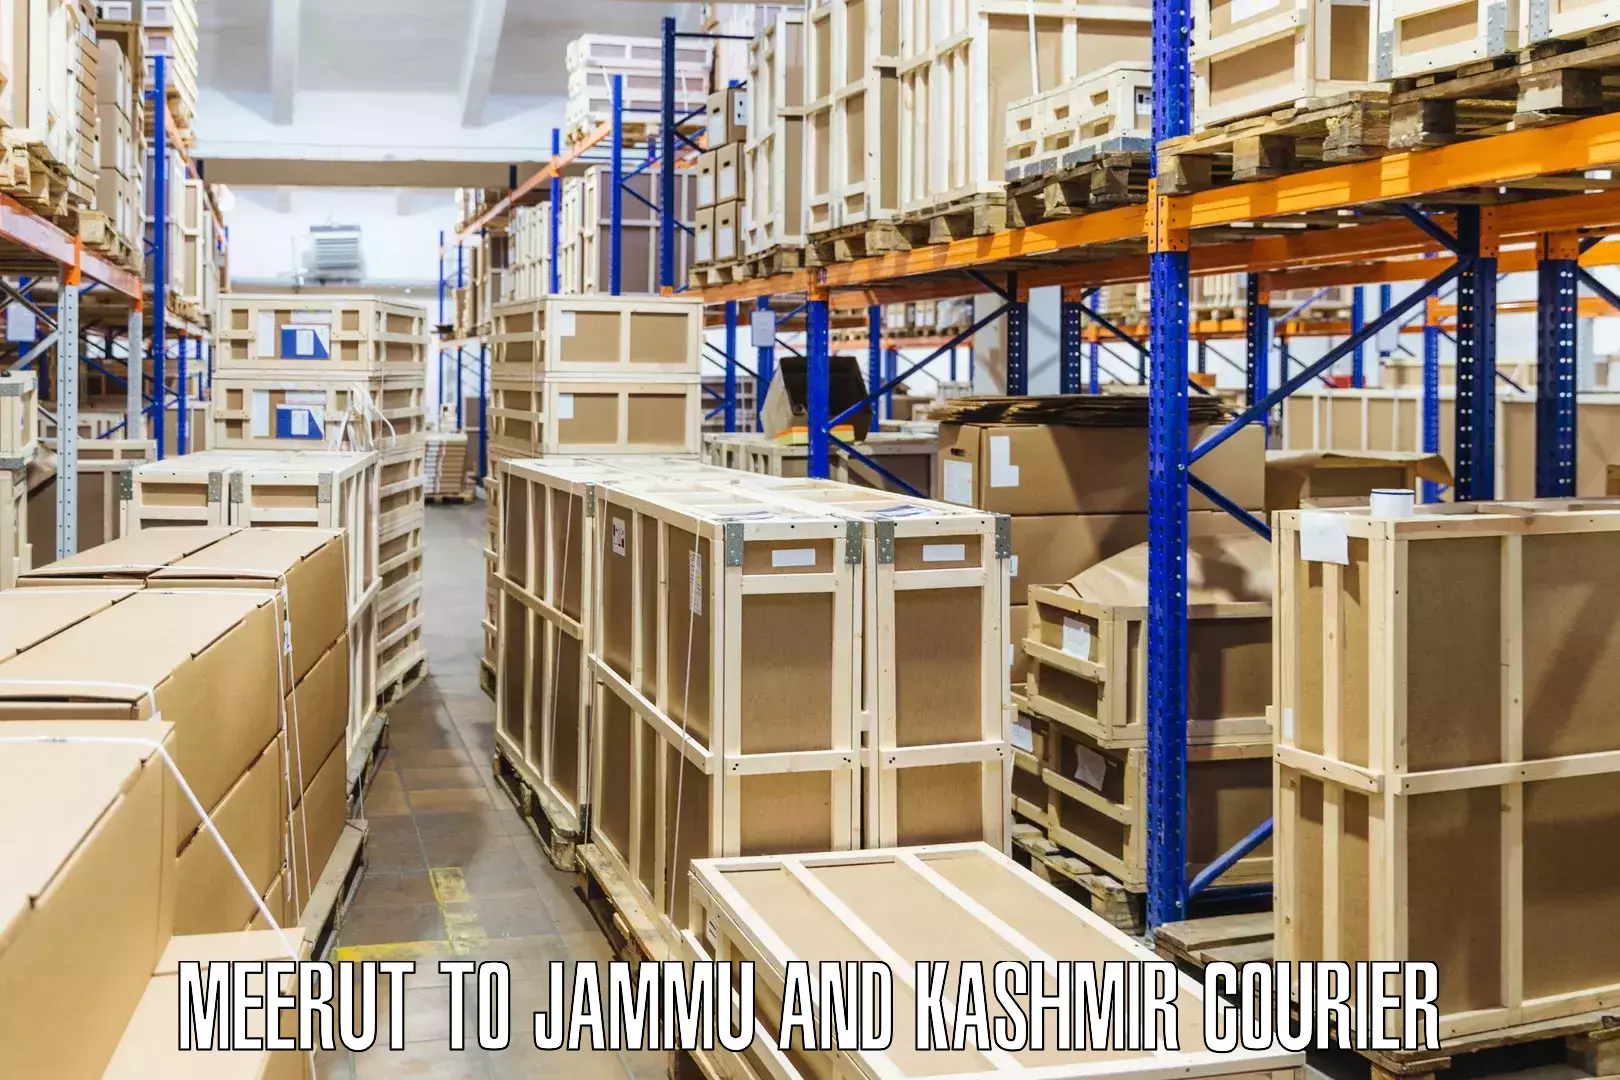 Easy return solutions in Meerut to Jammu